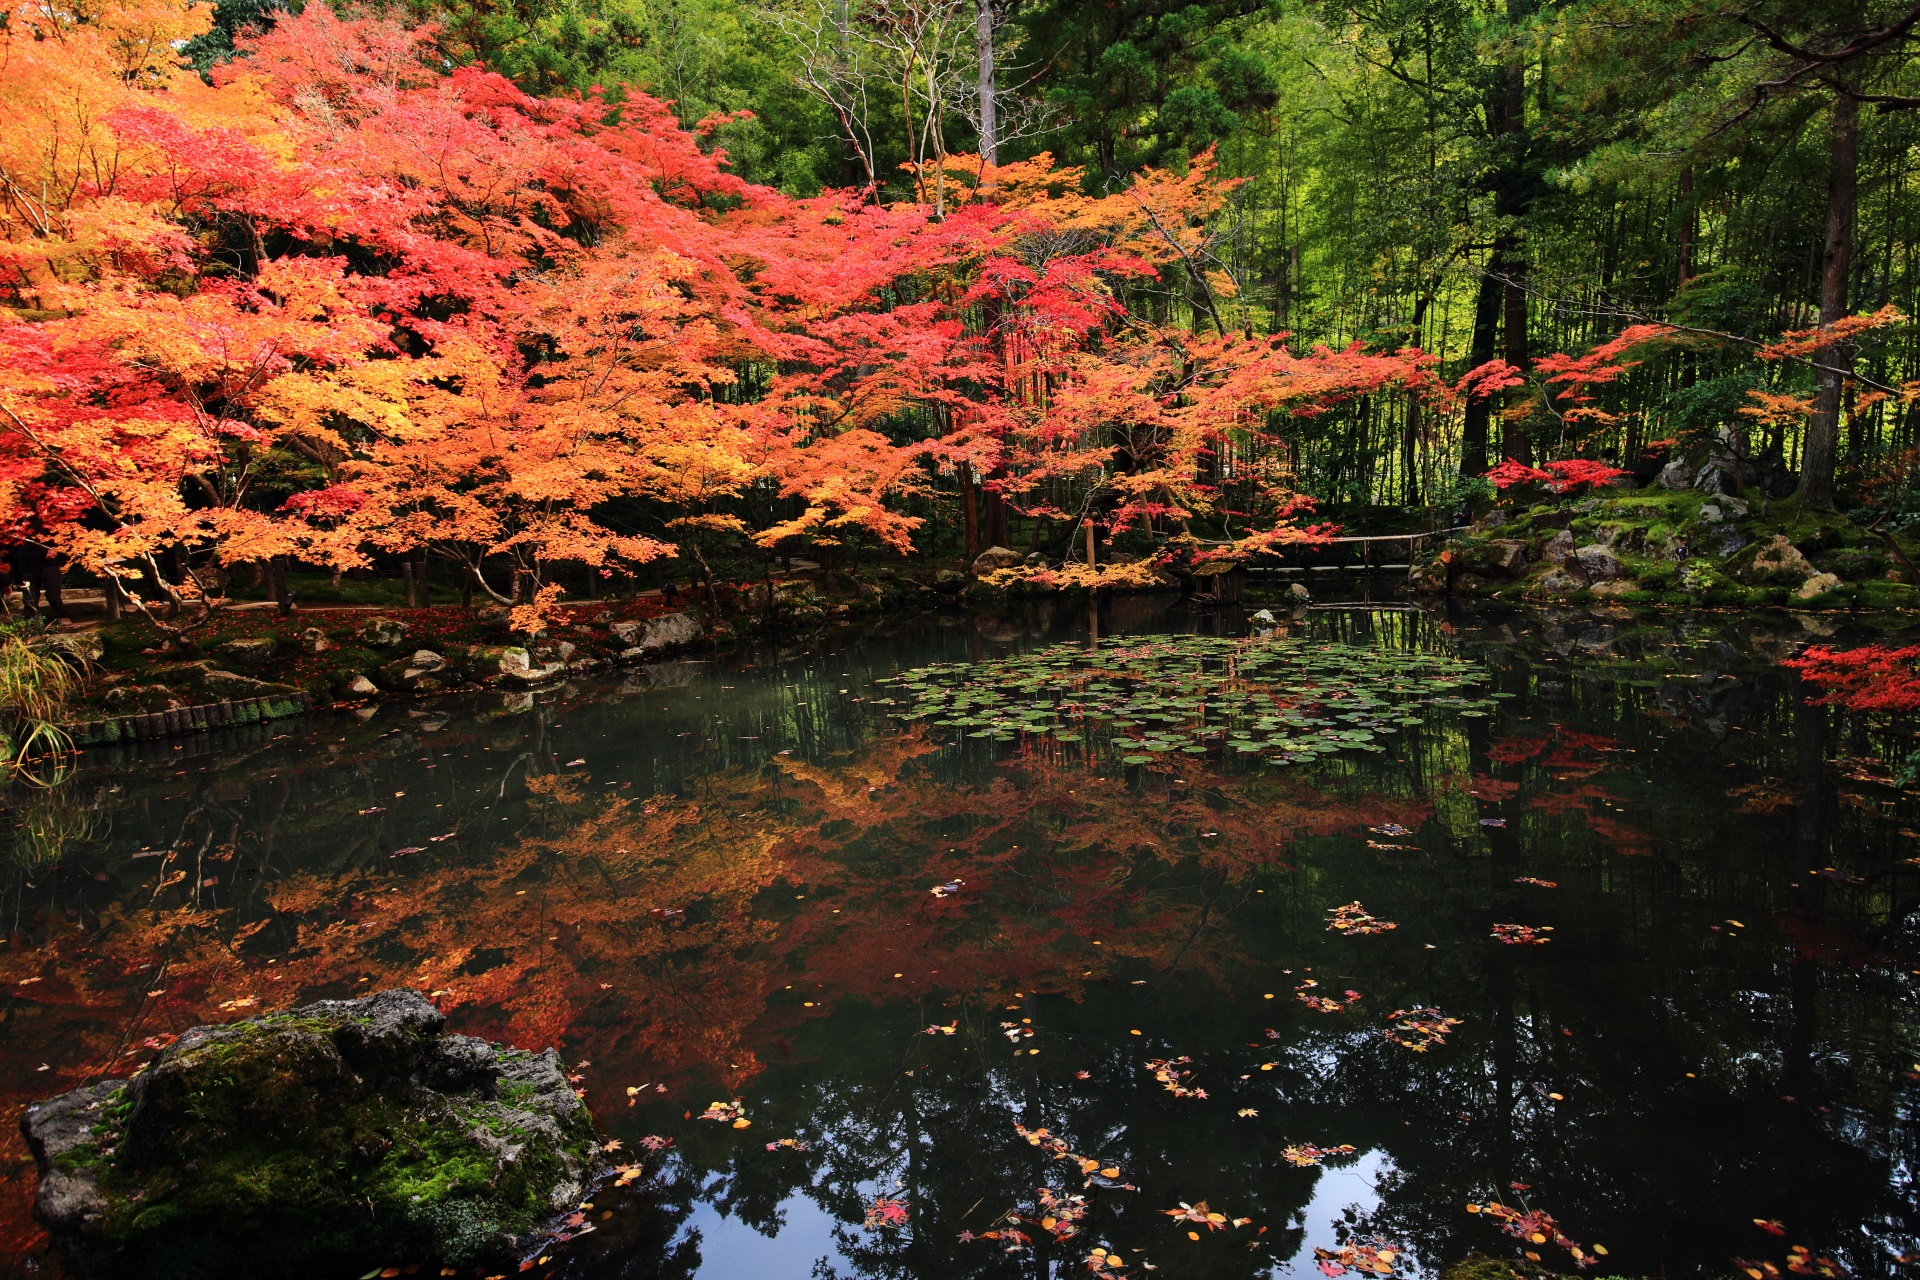 天授庵の池泉回遊式庭園の紅葉と奥の竹林